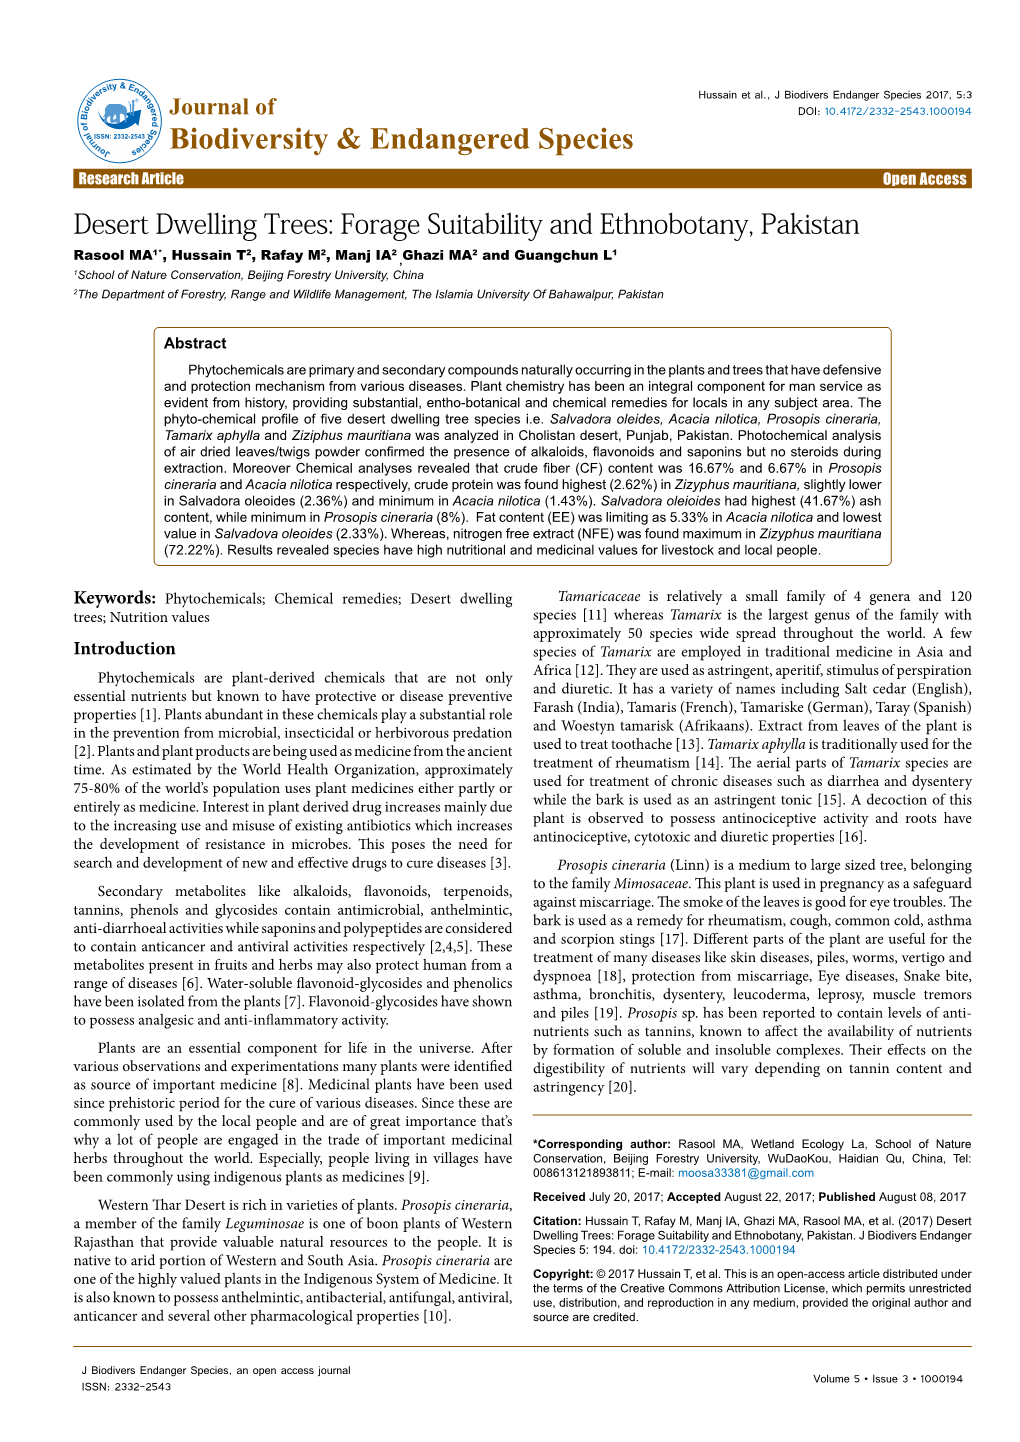 Desert Dwelling Trees: Forage Suitability and Ethnobotany, Pakistan